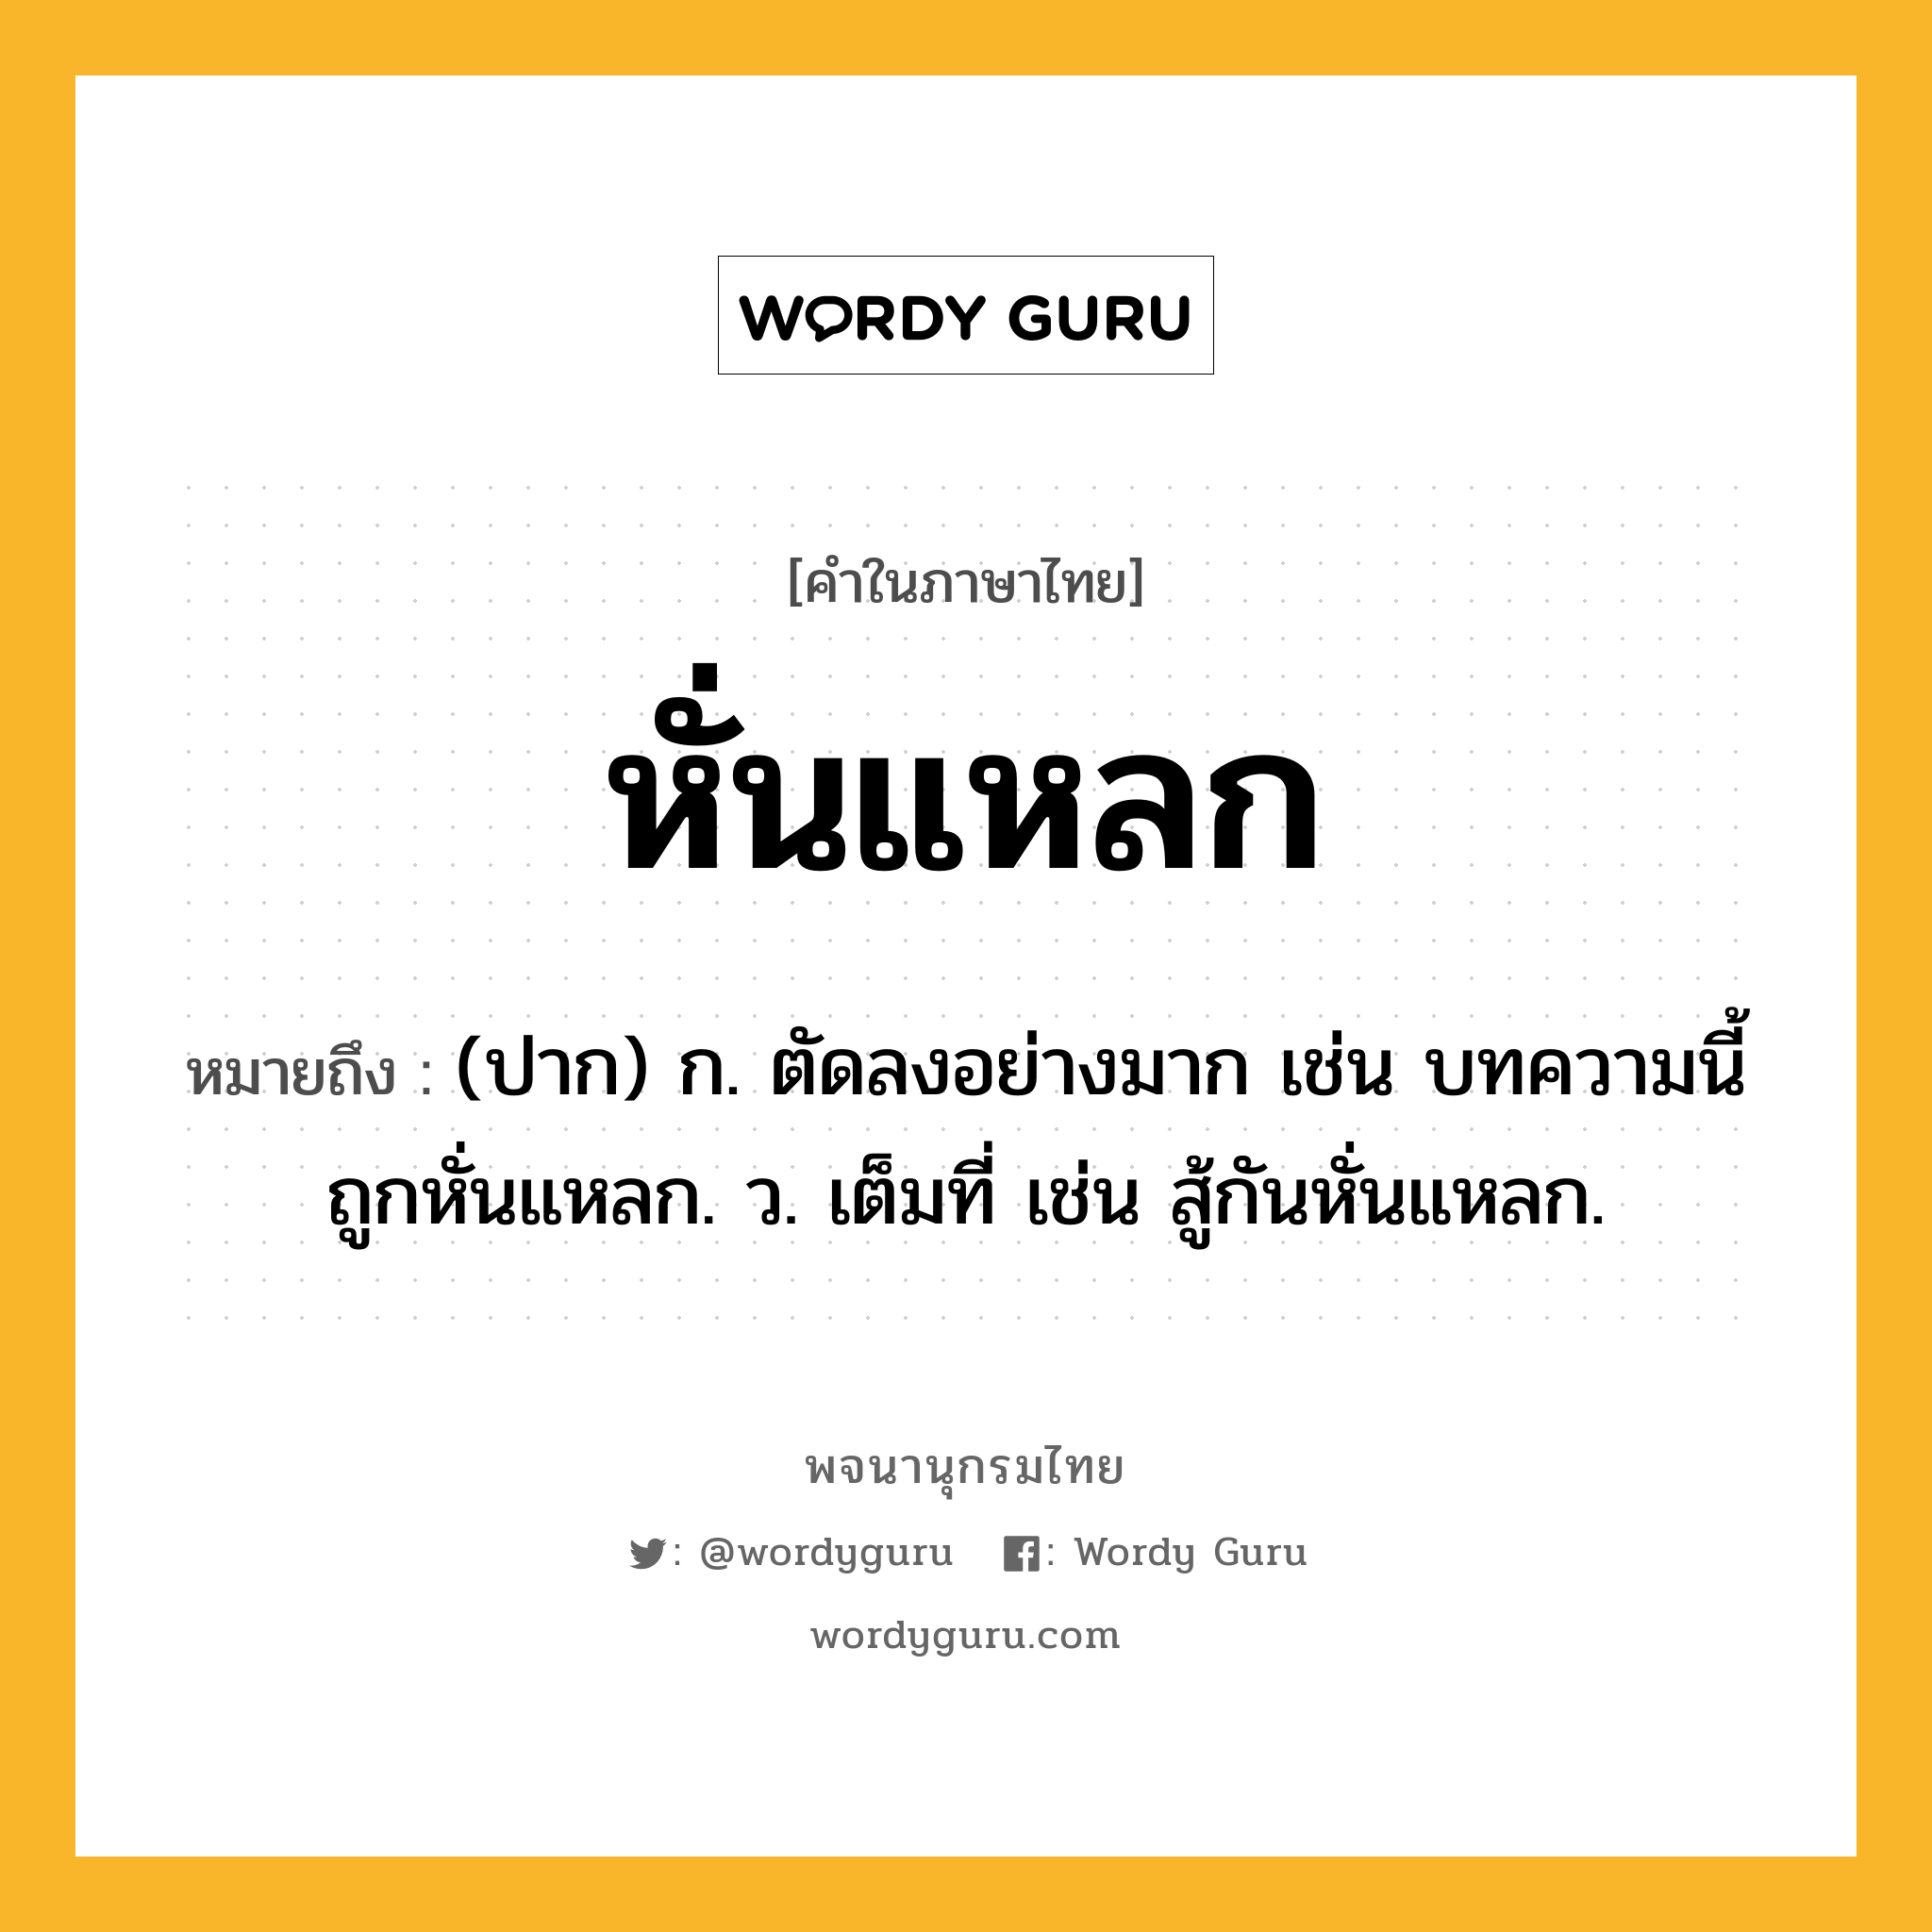 หั่นแหลก ความหมาย หมายถึงอะไร?, คำในภาษาไทย หั่นแหลก หมายถึง (ปาก) ก. ตัดลงอย่างมาก เช่น บทความนี้ถูกหั่นแหลก. ว. เต็มที่ เช่น สู้กันหั่นแหลก.